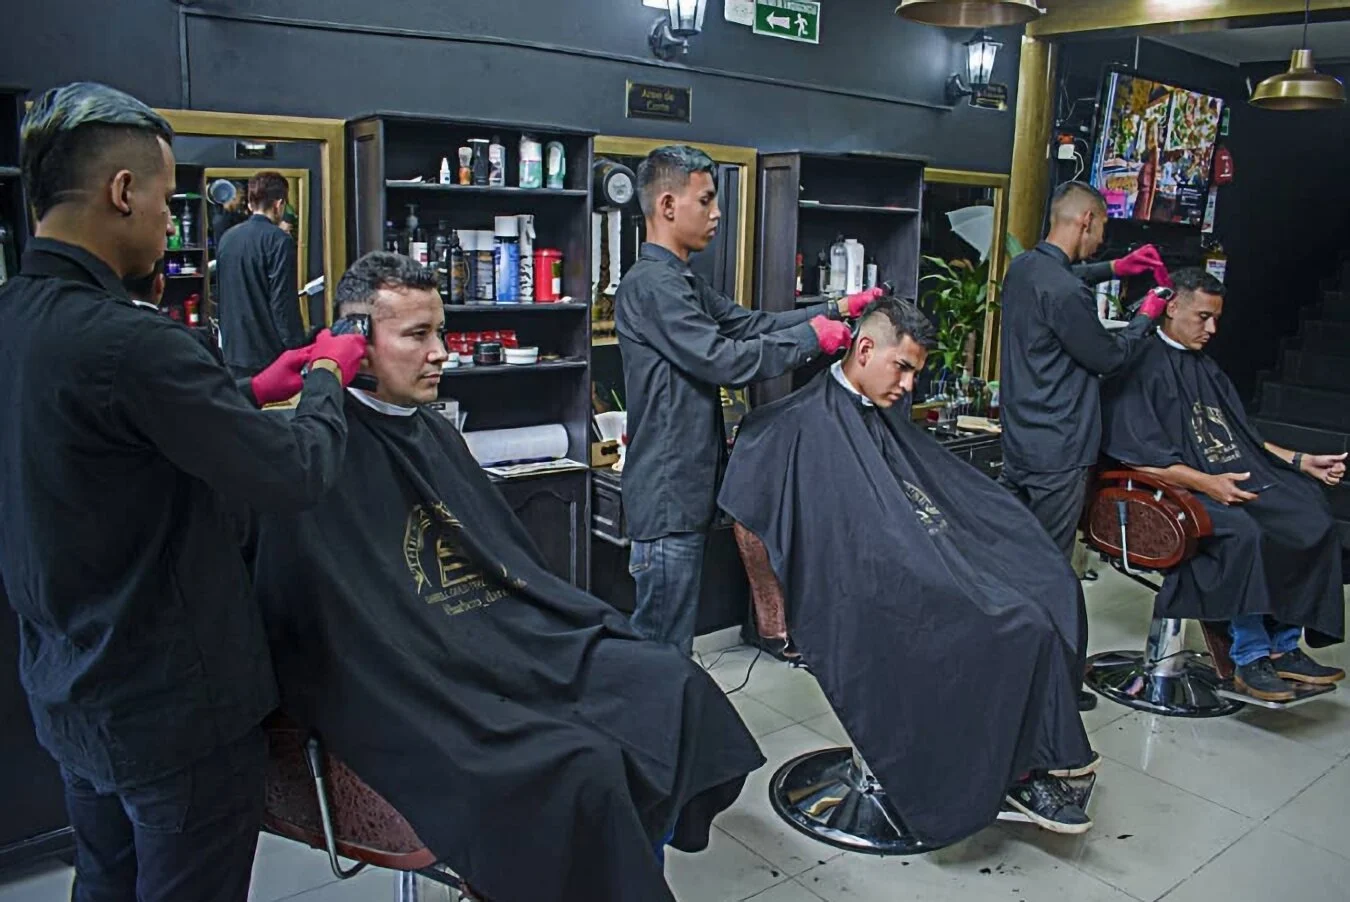 Barbería-escuela-de-barberos-ibague-darell-academia-y-barberia-7652